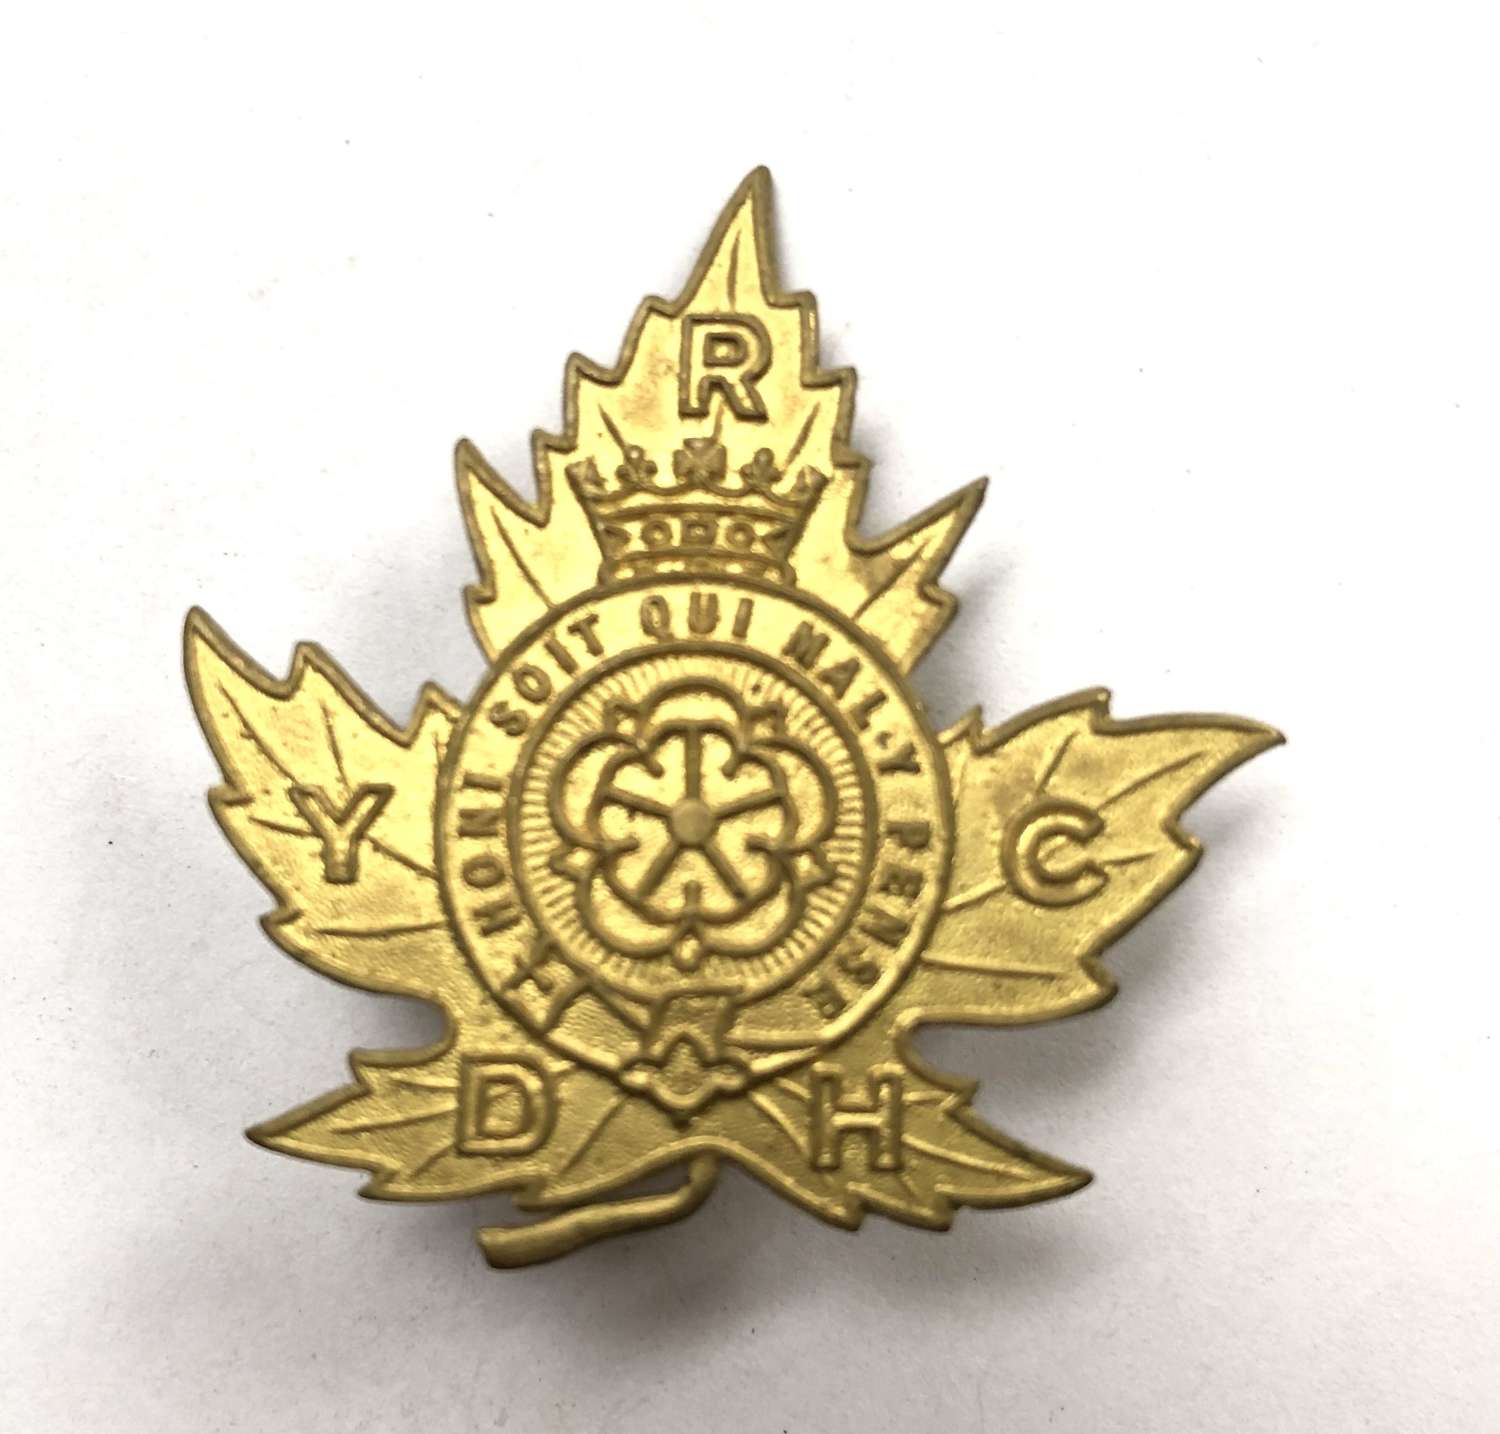 The Duke of York's Royal Canadian Hussars post 1898 cap badge